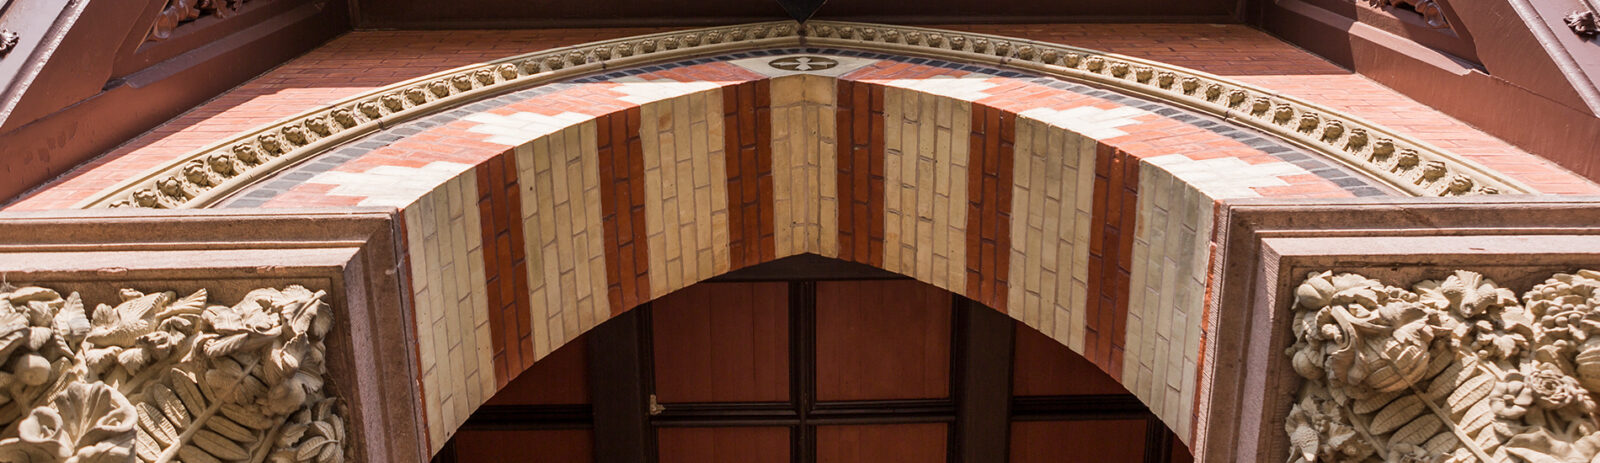 Sage Hall stonework archway above a doorway.